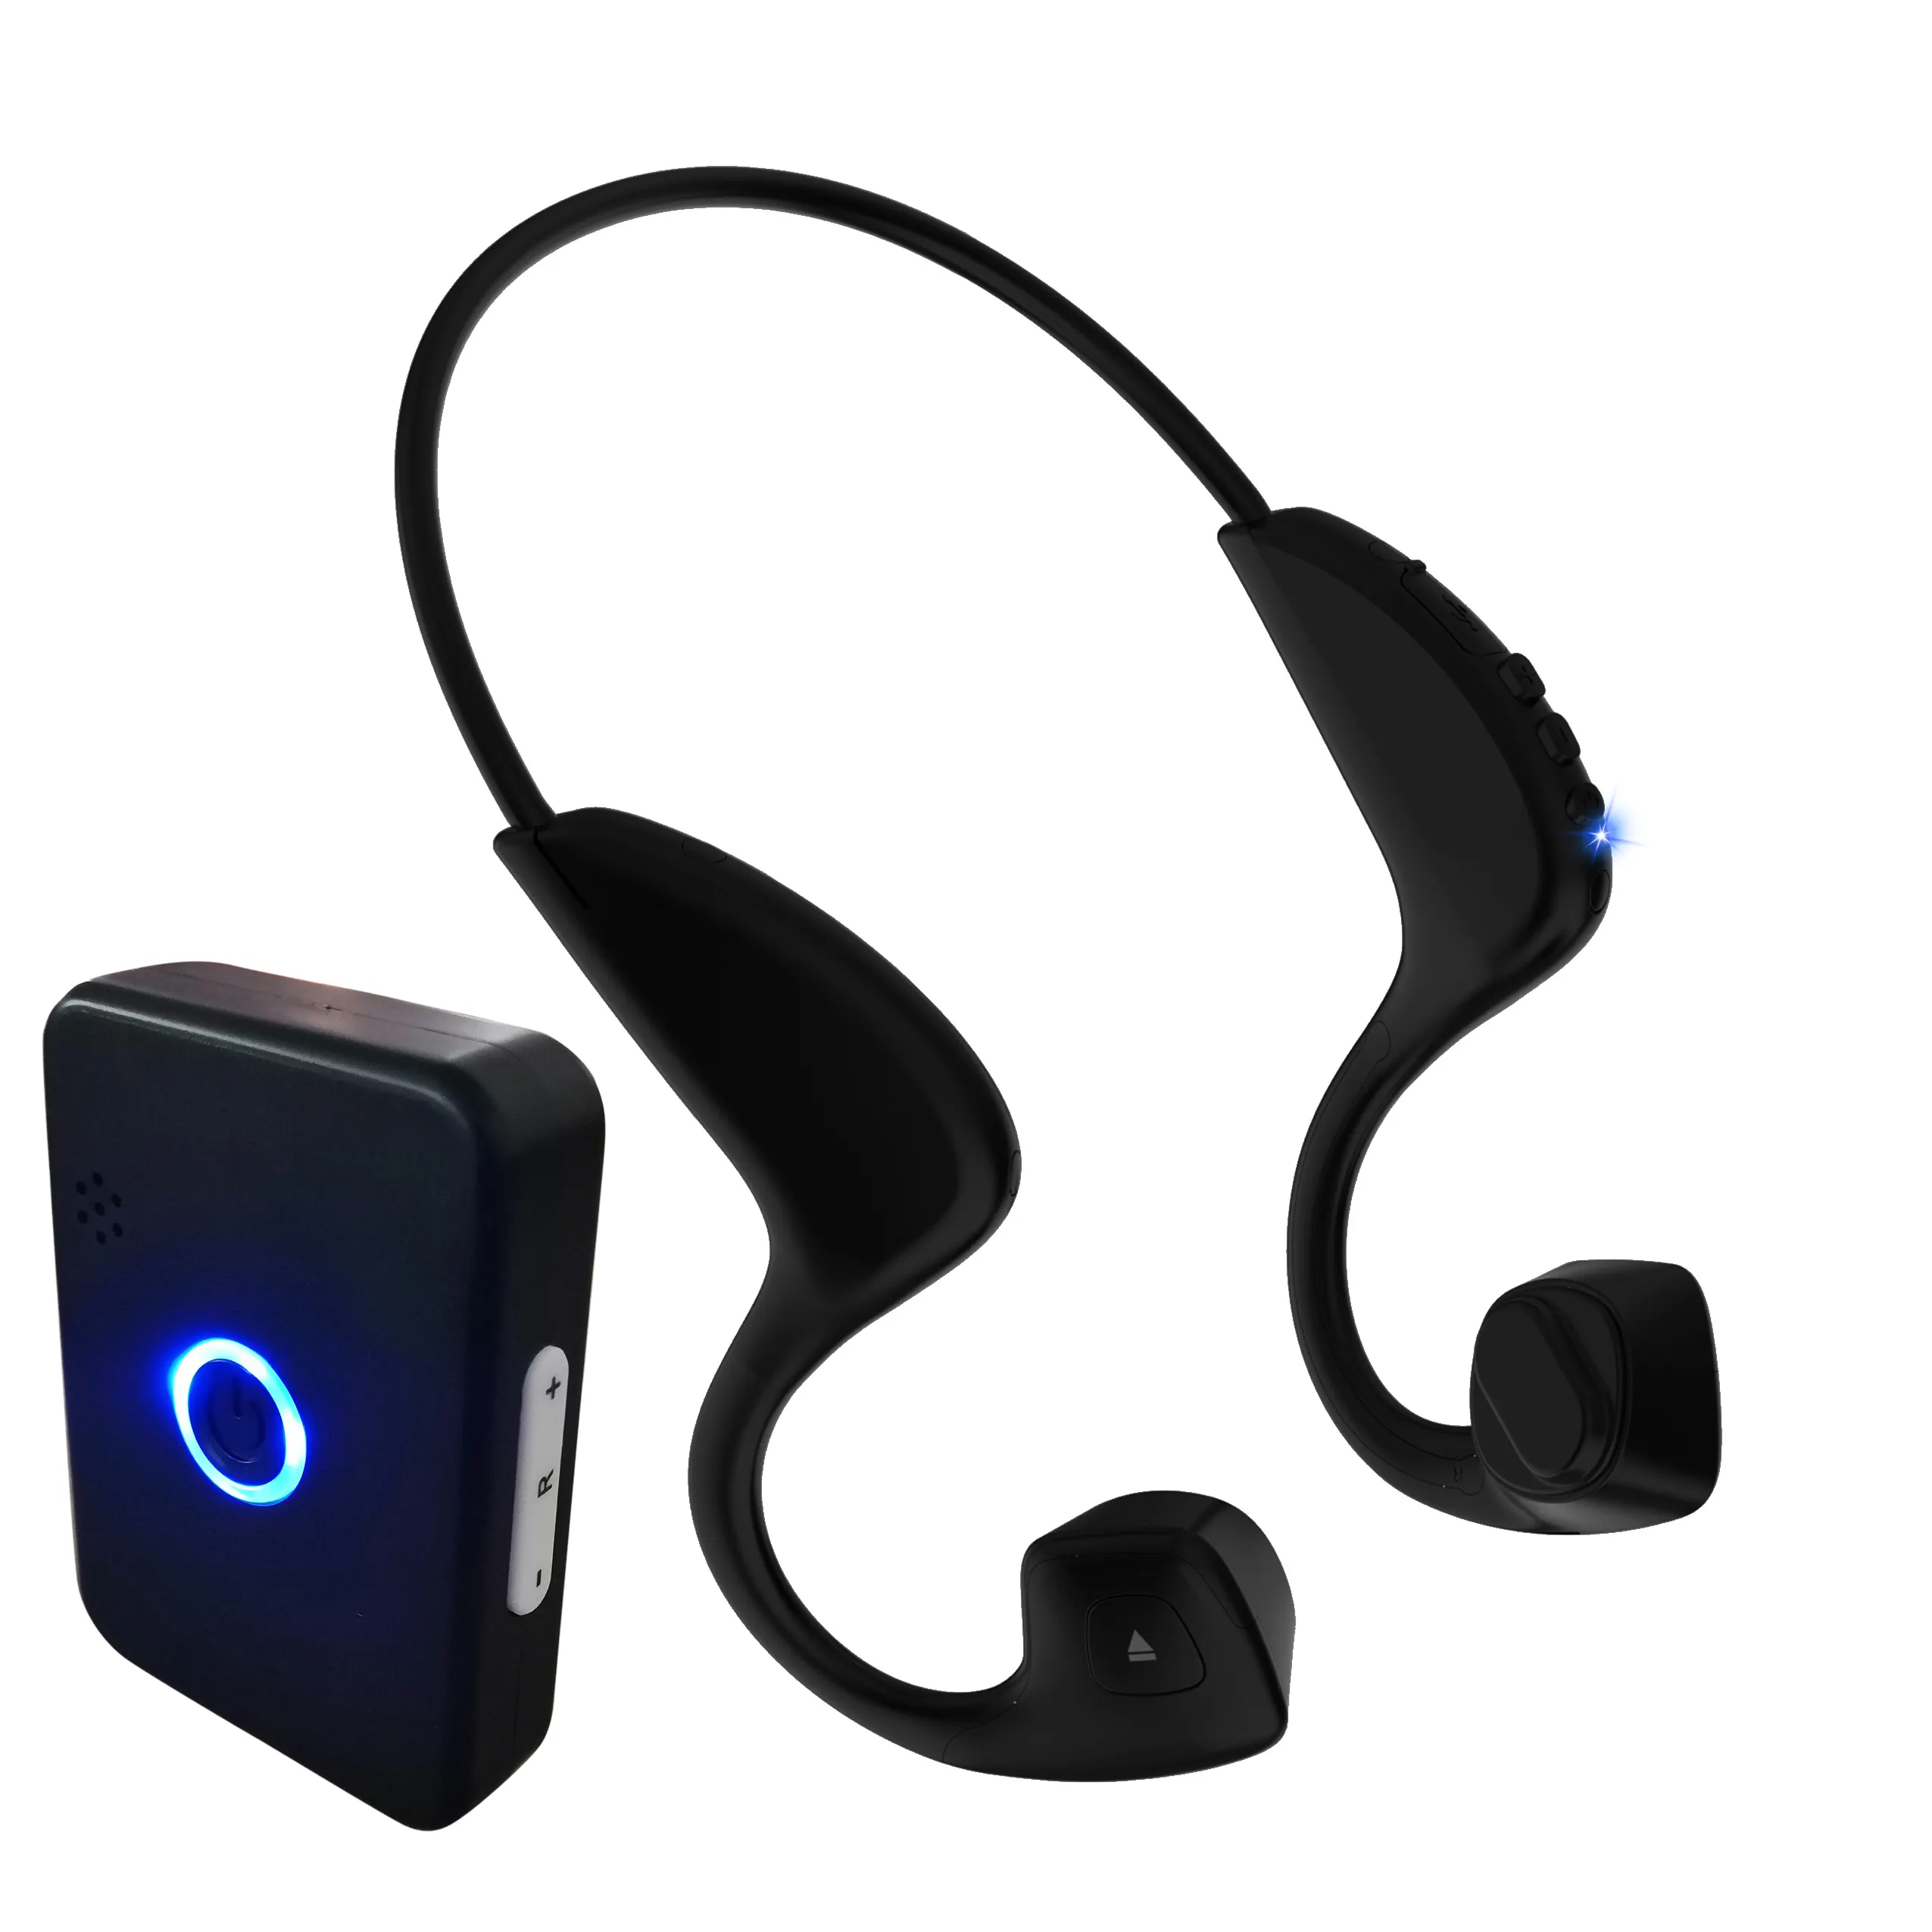 Audição sem fio Deficiente TV headphone Hearing Aid Bone Condução Headset com transmissor de som para perda auditiva